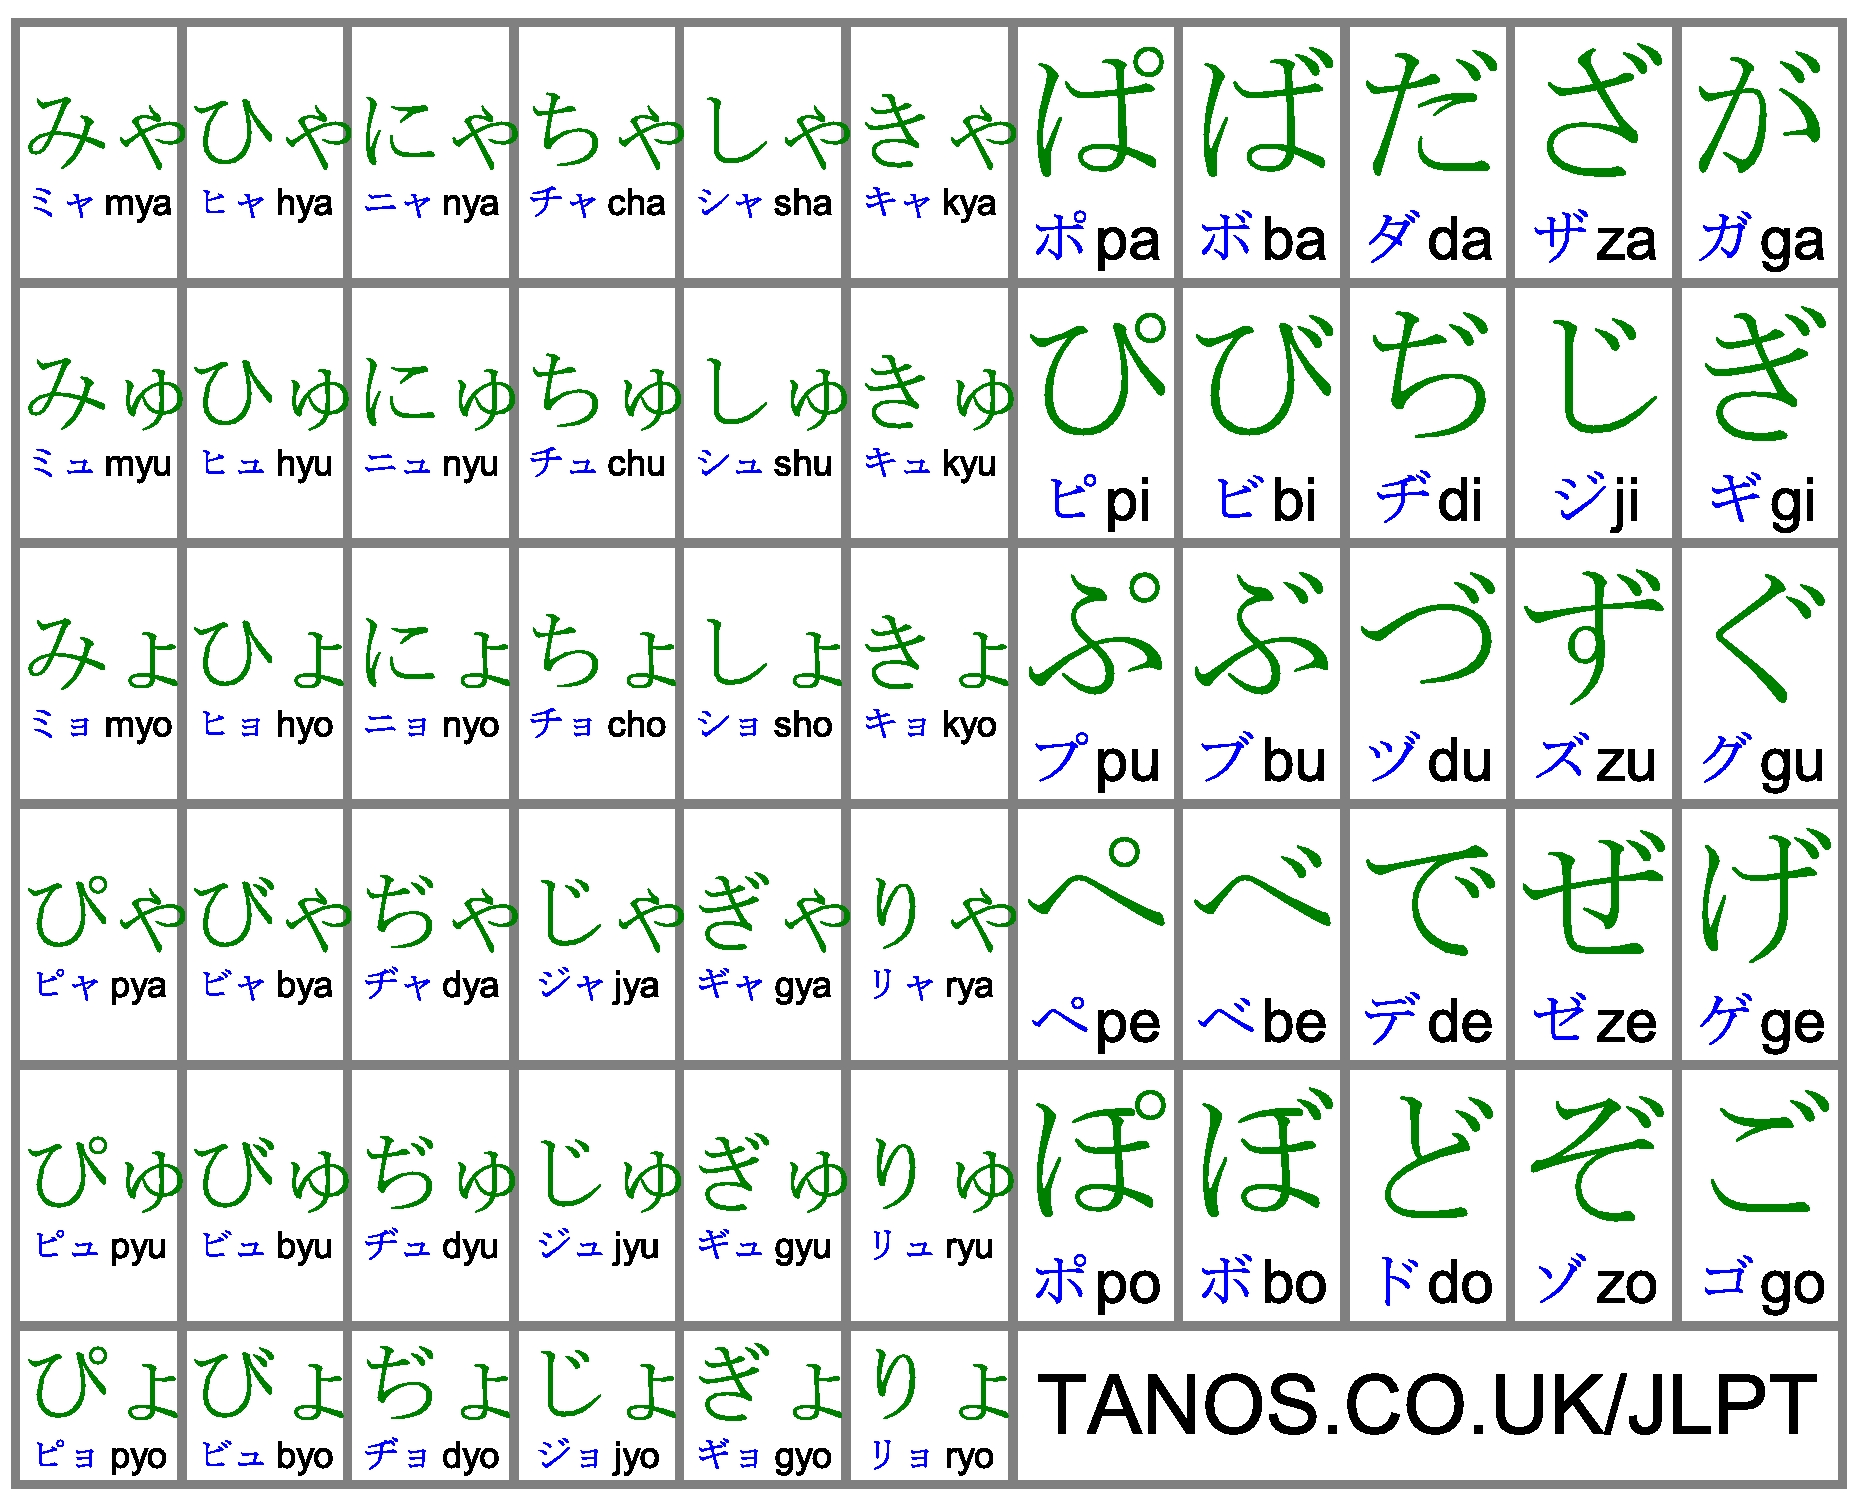 Image Gallery hiragana and katakana pdf